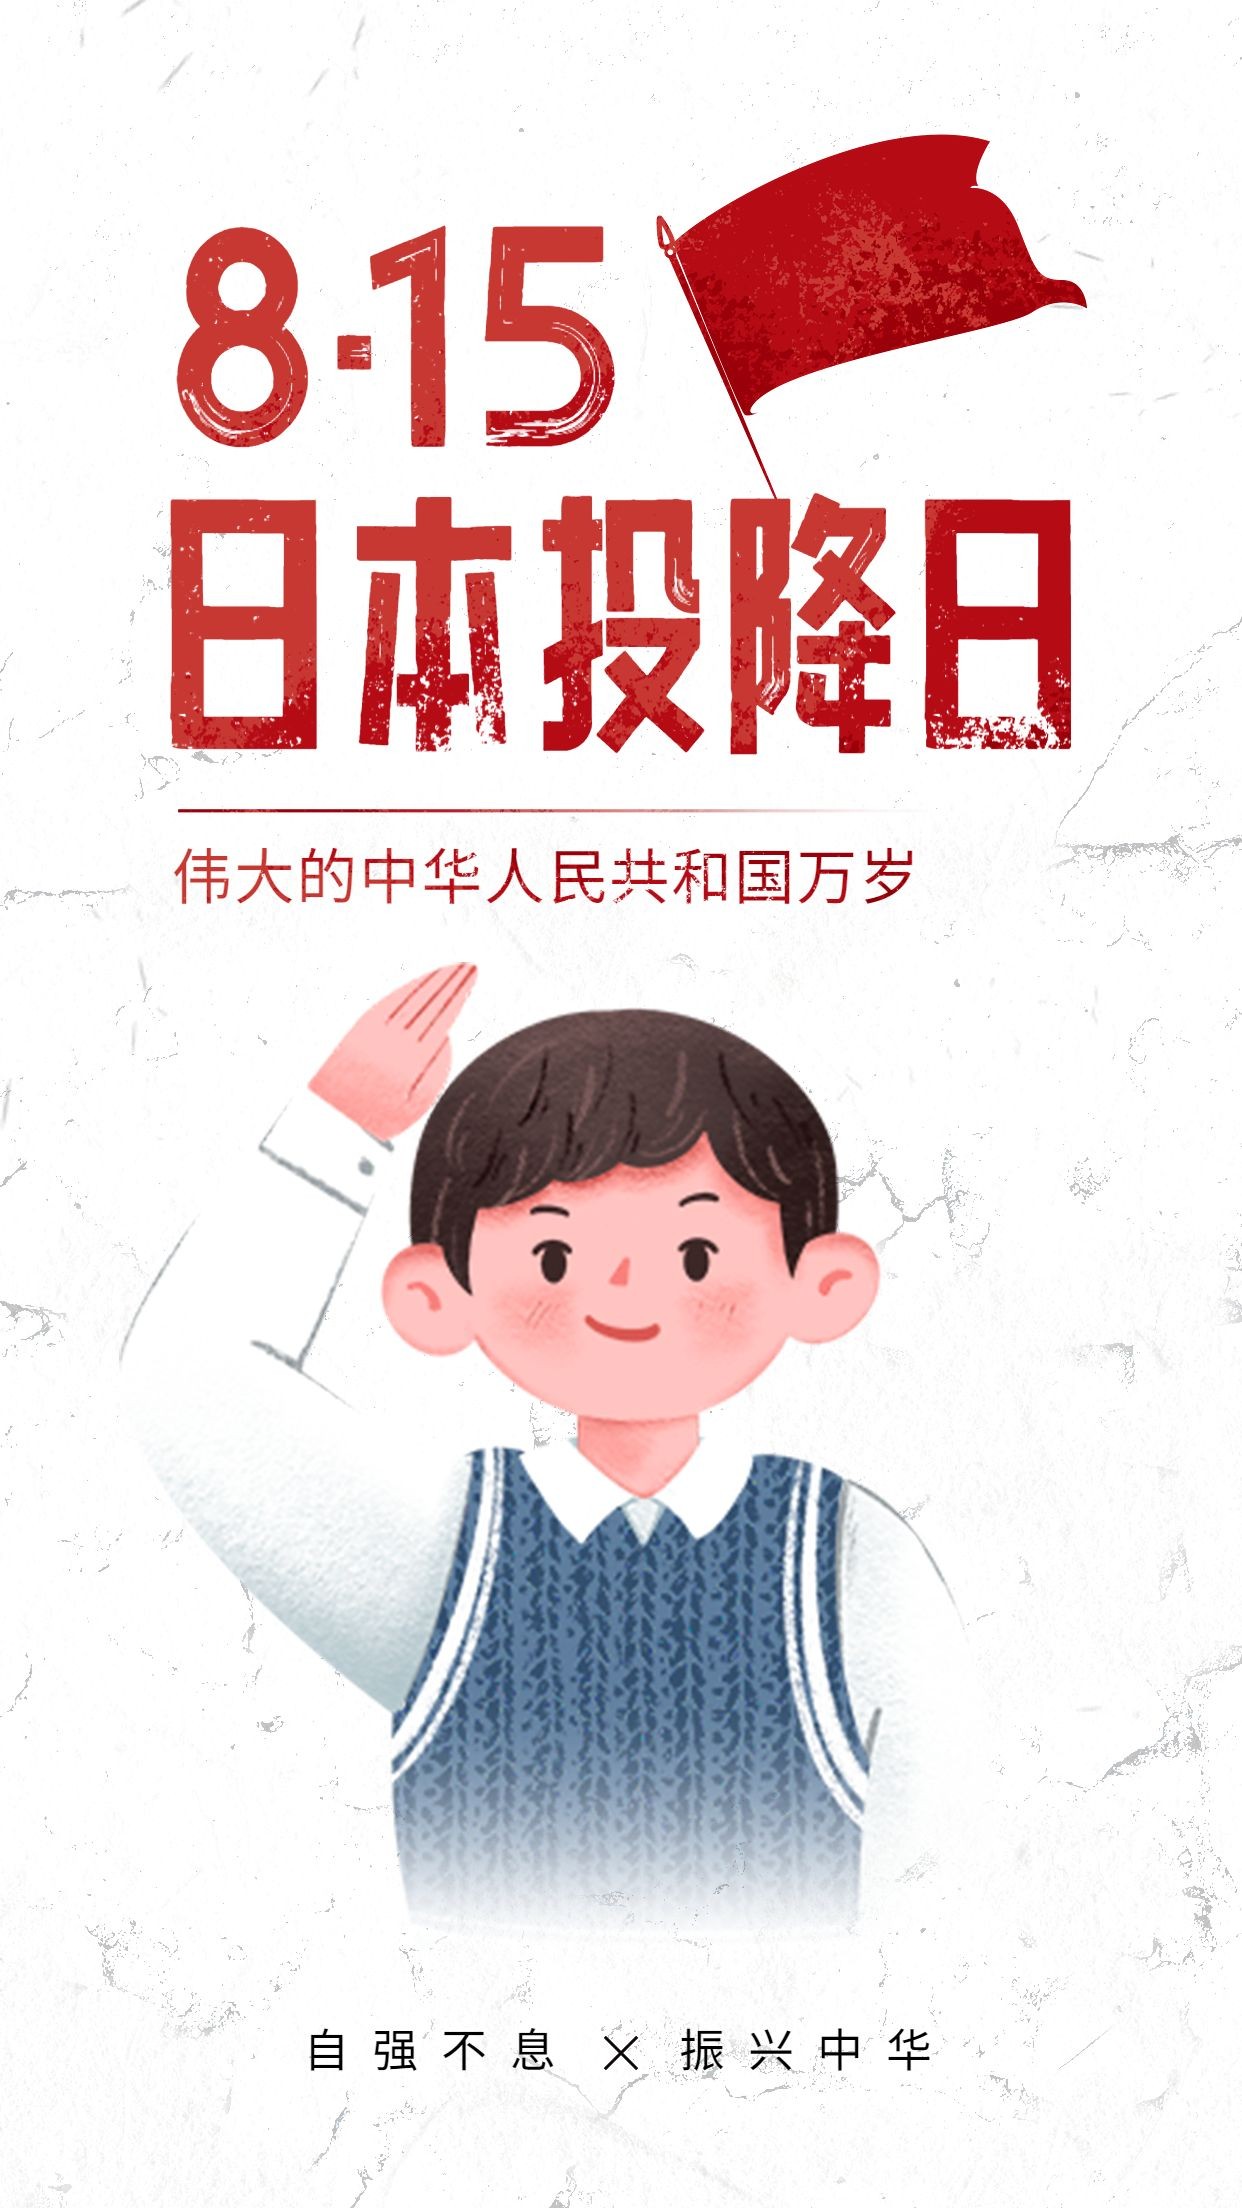 日本无条件投降日节日宣传插画手机海报